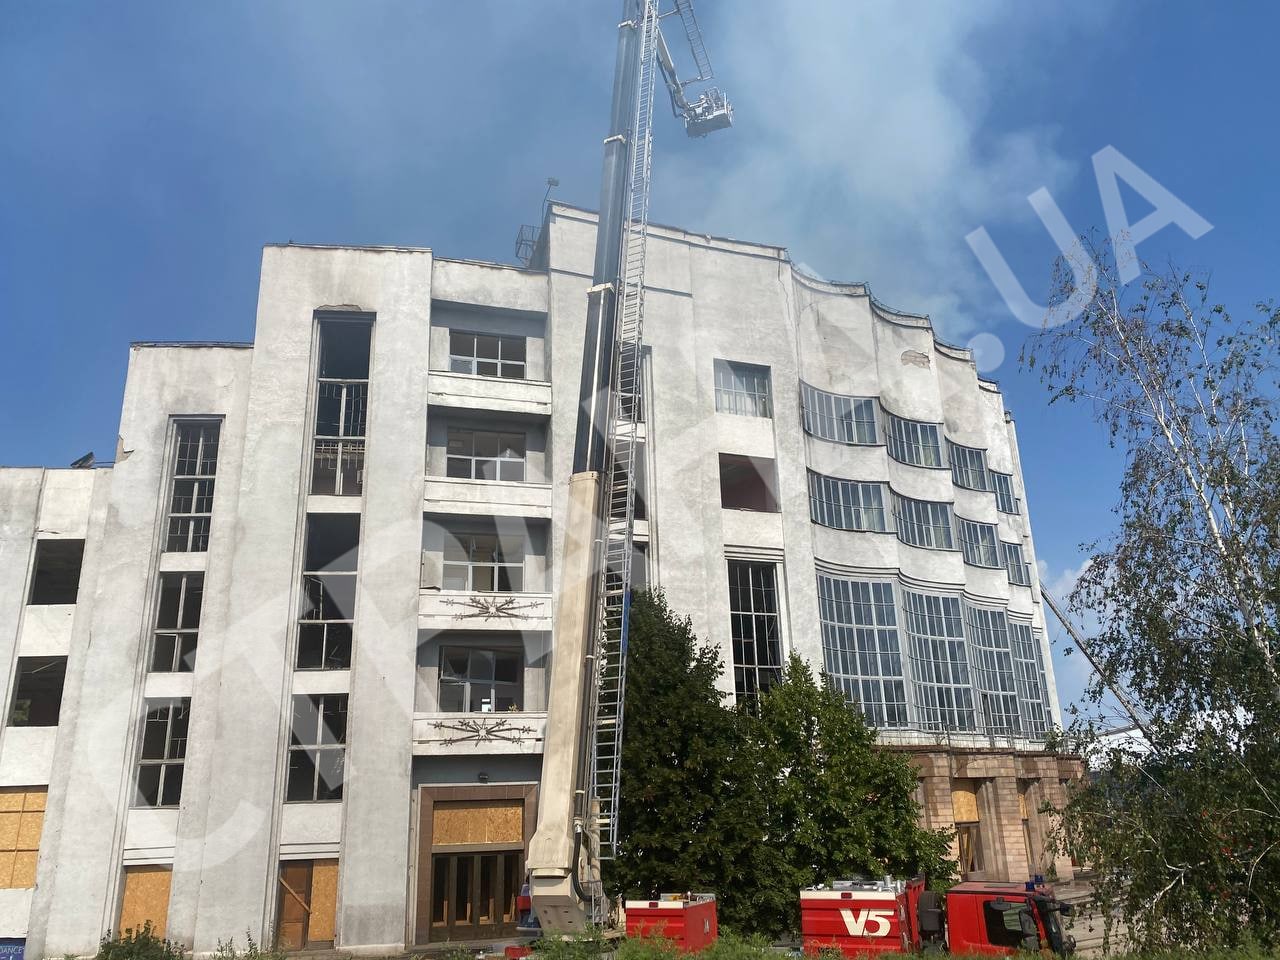 Спасатели тушат пожар в ДК Железнодорожников в Харькове.